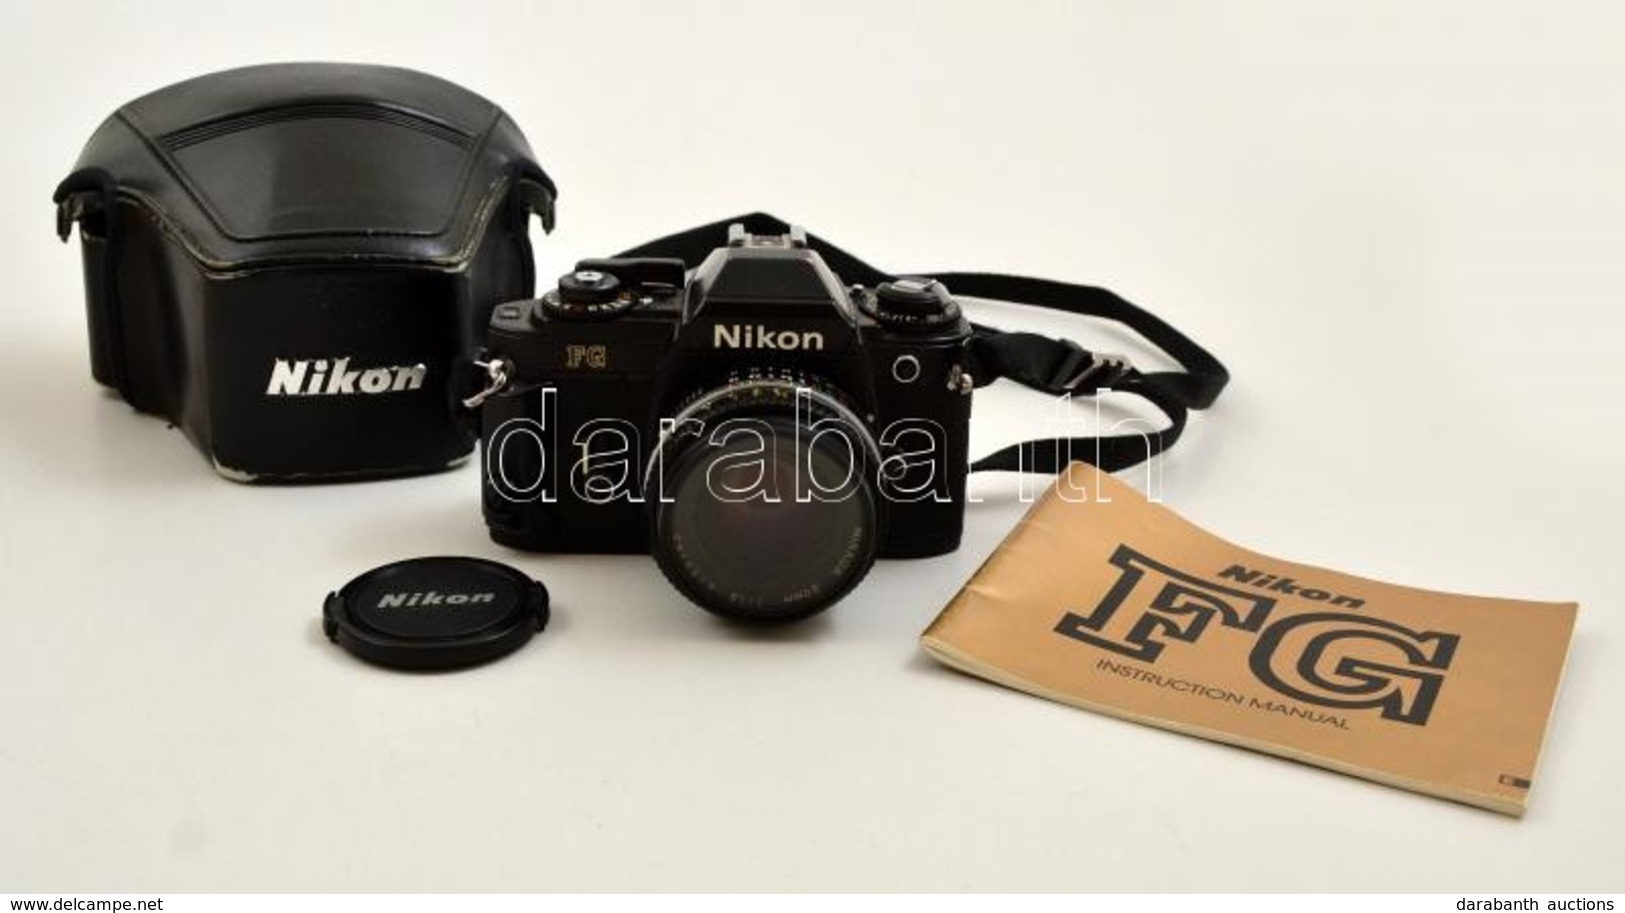 Cca 1982 Nikon FG Filmes SLR Fényképezőgép, Nikkor 50mm F/1.8 Objektívvel, Eredeti Bőr Tokjában, Miranda Skylight Szűrőv - Fototoestellen